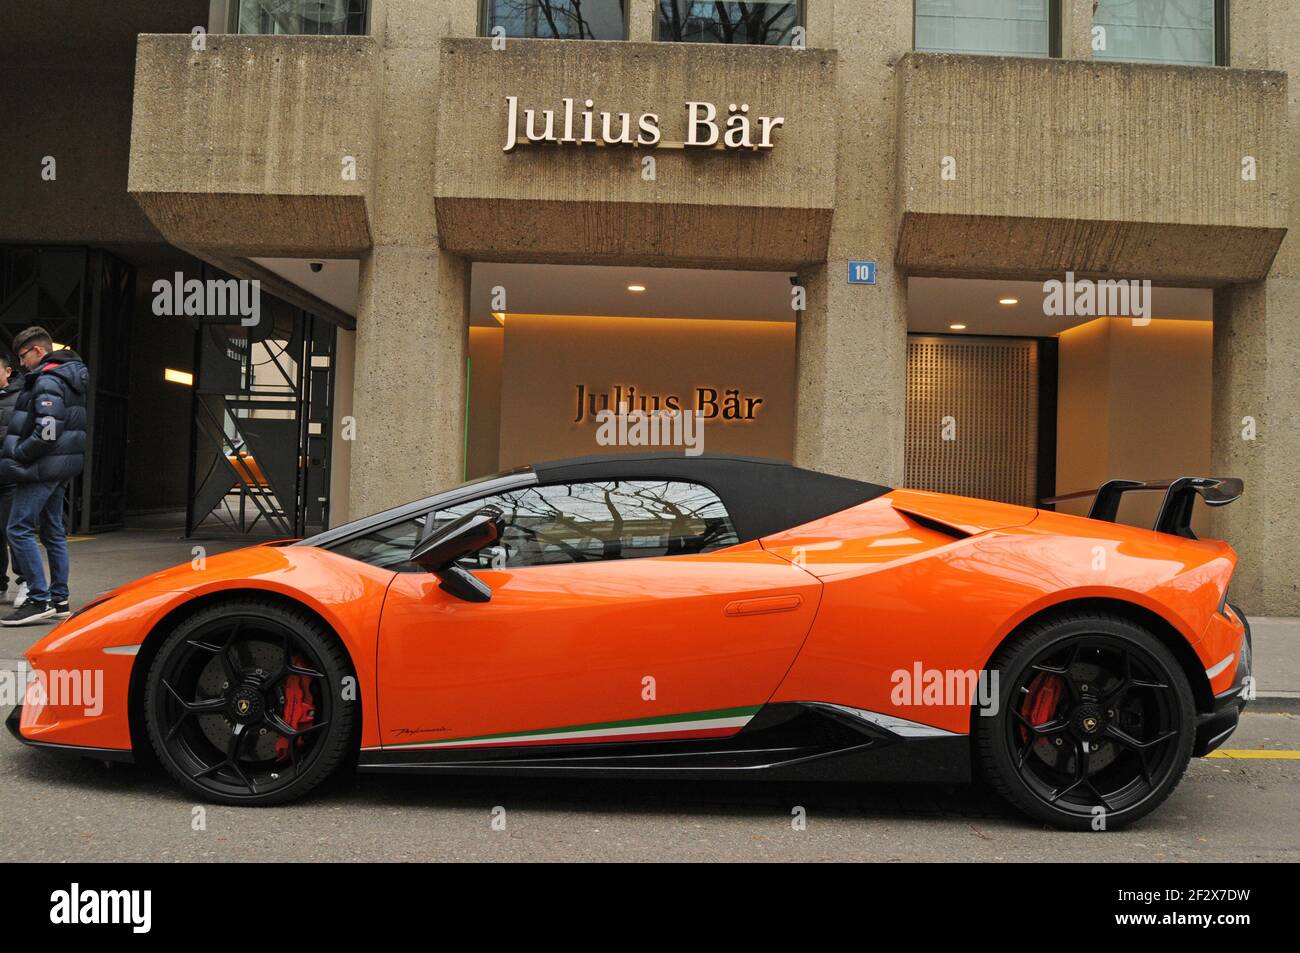 Suisse : une Lamborghini orange devant la banque Julius Bär à Bahnhofsstrasse, dans la ville de Zurich Banque D'Images